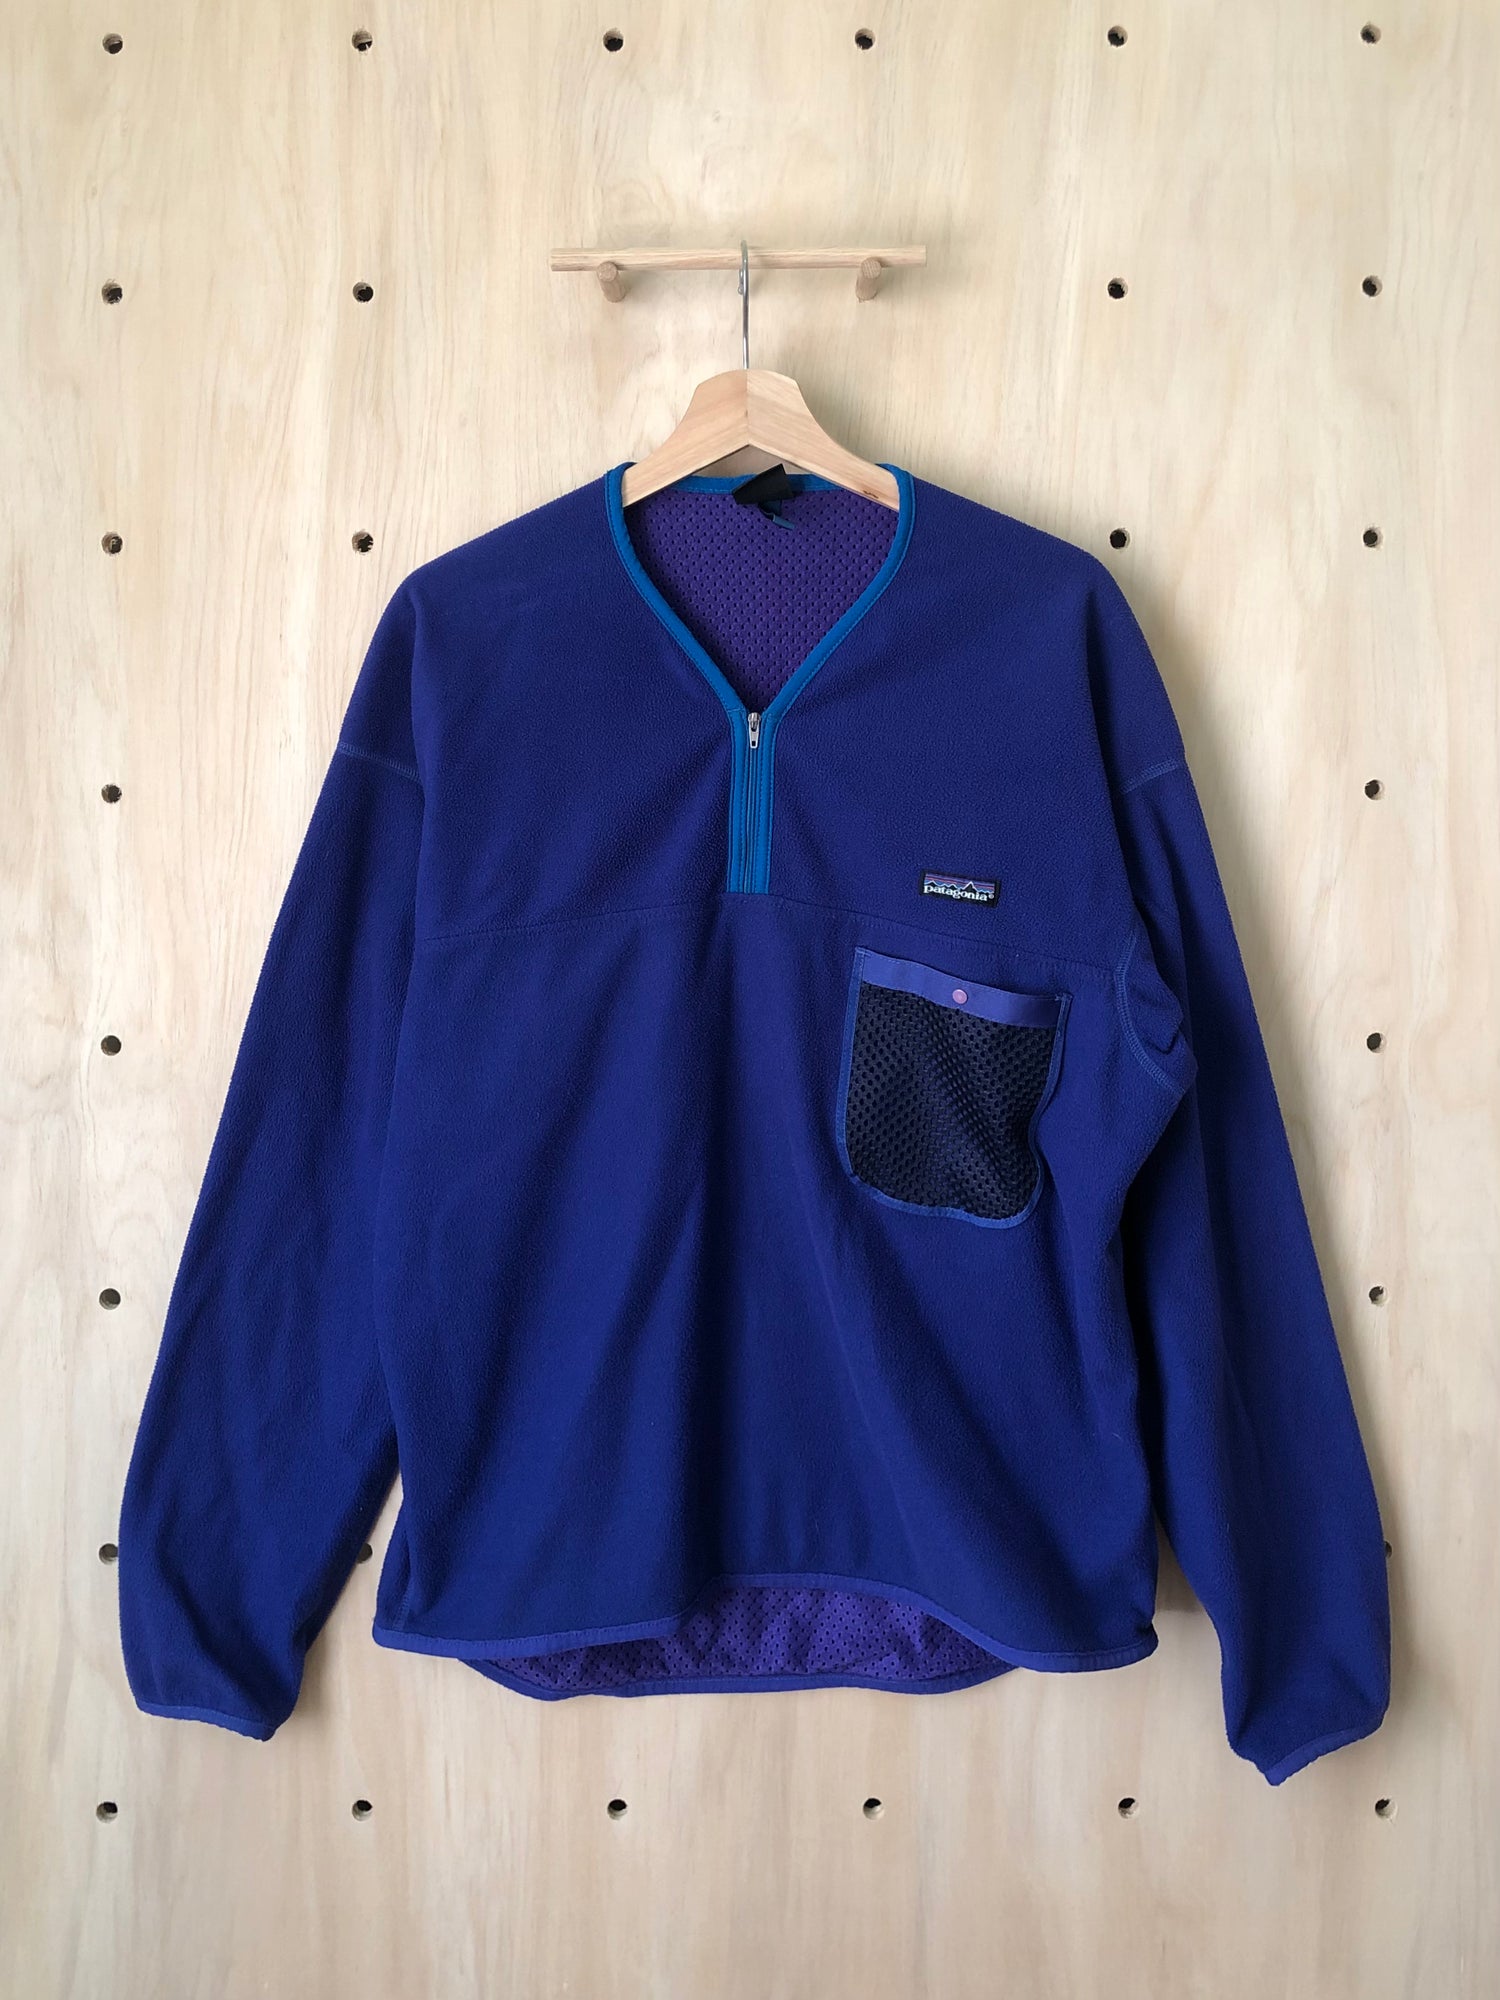 Vintage Capilene Kayak Fleece, Blue/Purple (L) – Gorp Goods